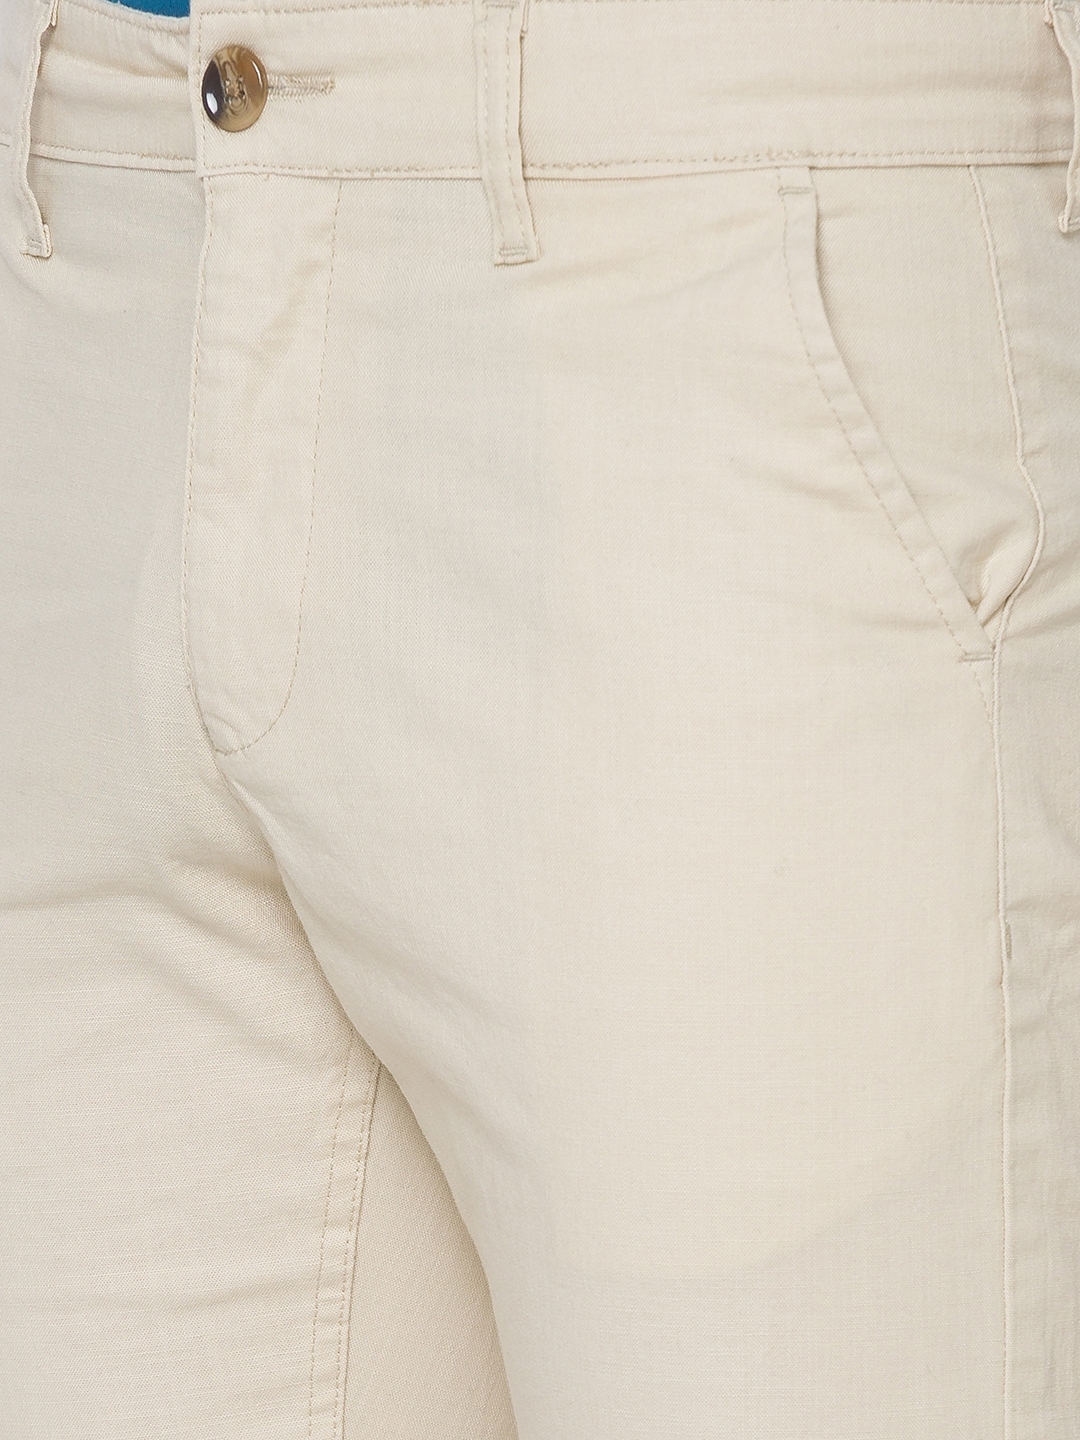 globus | Men's Beige Cotton Solid Shorts 4